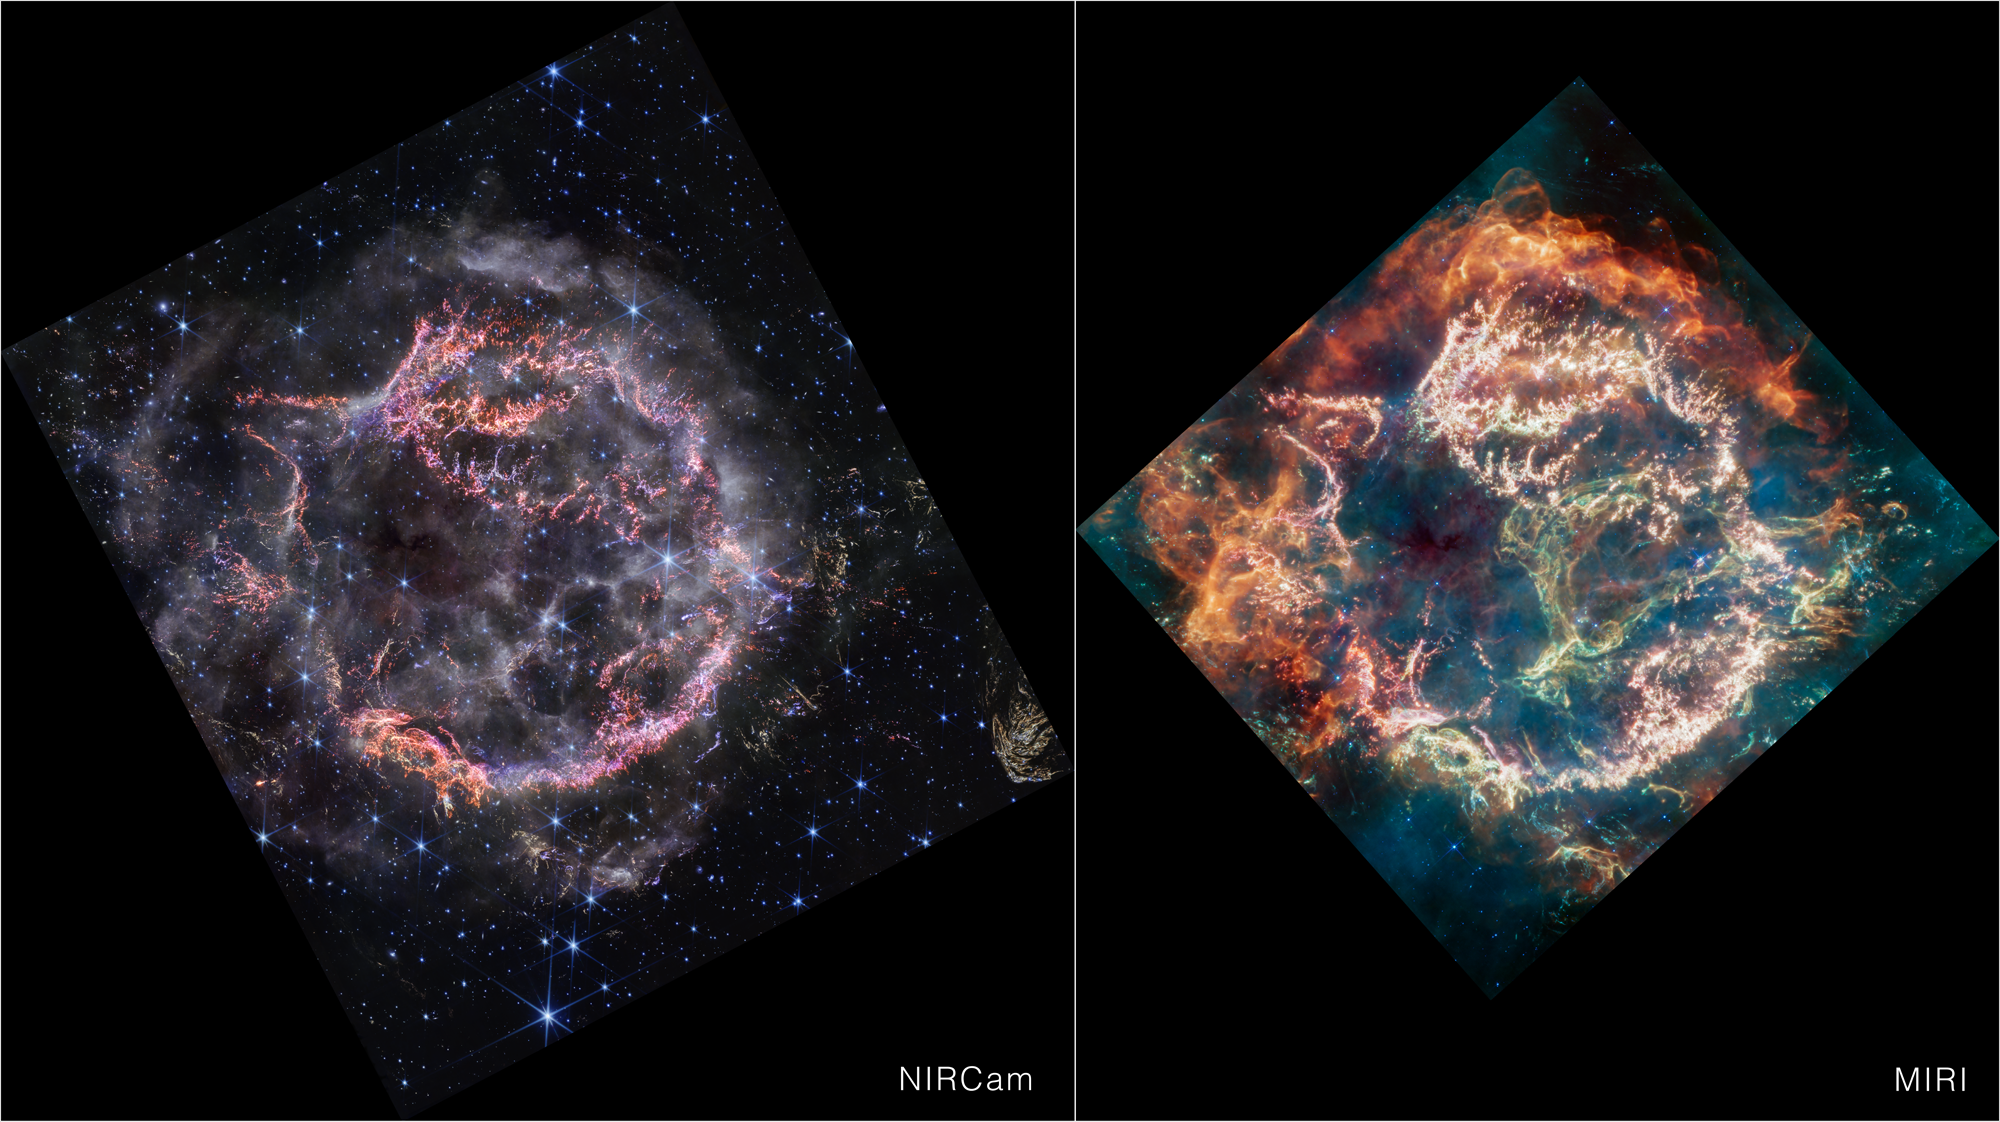 Na ilustracji: Zestawienie zdjęć pozostałości po wybuchu supernowej Kasjopeja A (Cas A) w ujęciu Teleskopu Webba (po lewej - ujęcie w bliskiej podczerwieni z kamery NIRCam, po prawej -ujęcie w średniej podczerwieni z instrumentu MIRI). Zdjęcie Cas A z kamery NIRCam cechuje się większą rozdzielczością (jest bardziej ostre) niż z MIRI co wynika z obserwacji w krótszym zakresie długości fali. Zewnętrzne obszary wewnętrznej części głównej otoczki Cas A widoczne w barwie pomarańczowej i czerwonej na zdjęciu MIRI odpowiadają smugom dymu na zdjęciu NIRCam. To przejście wskazuje na miejsca, gdzie fala uderzeniowa supernowej zderza się z otaczającą materią międzygwiazdową. Pył w tej materii jest zbyt chłodny, aby zaobserwować go w bliskiej podczerwieni (= NIRCam), ale staje się jasny w średniej podczerwieni (=MIRI). W bliskiej podczerwieni nie widać zielonej pętli w centralnej pustce Cas A nazwanej przez astrofizyków „Zielonym Potworem”, która z kolei jest widoczna w średniej podczerwieni. Źródło: NASA, ESA, CSA, STScI, D. Milisavljevic (Purdue University), T. Temim (Princeton University), I. De Looze (University of Gent)